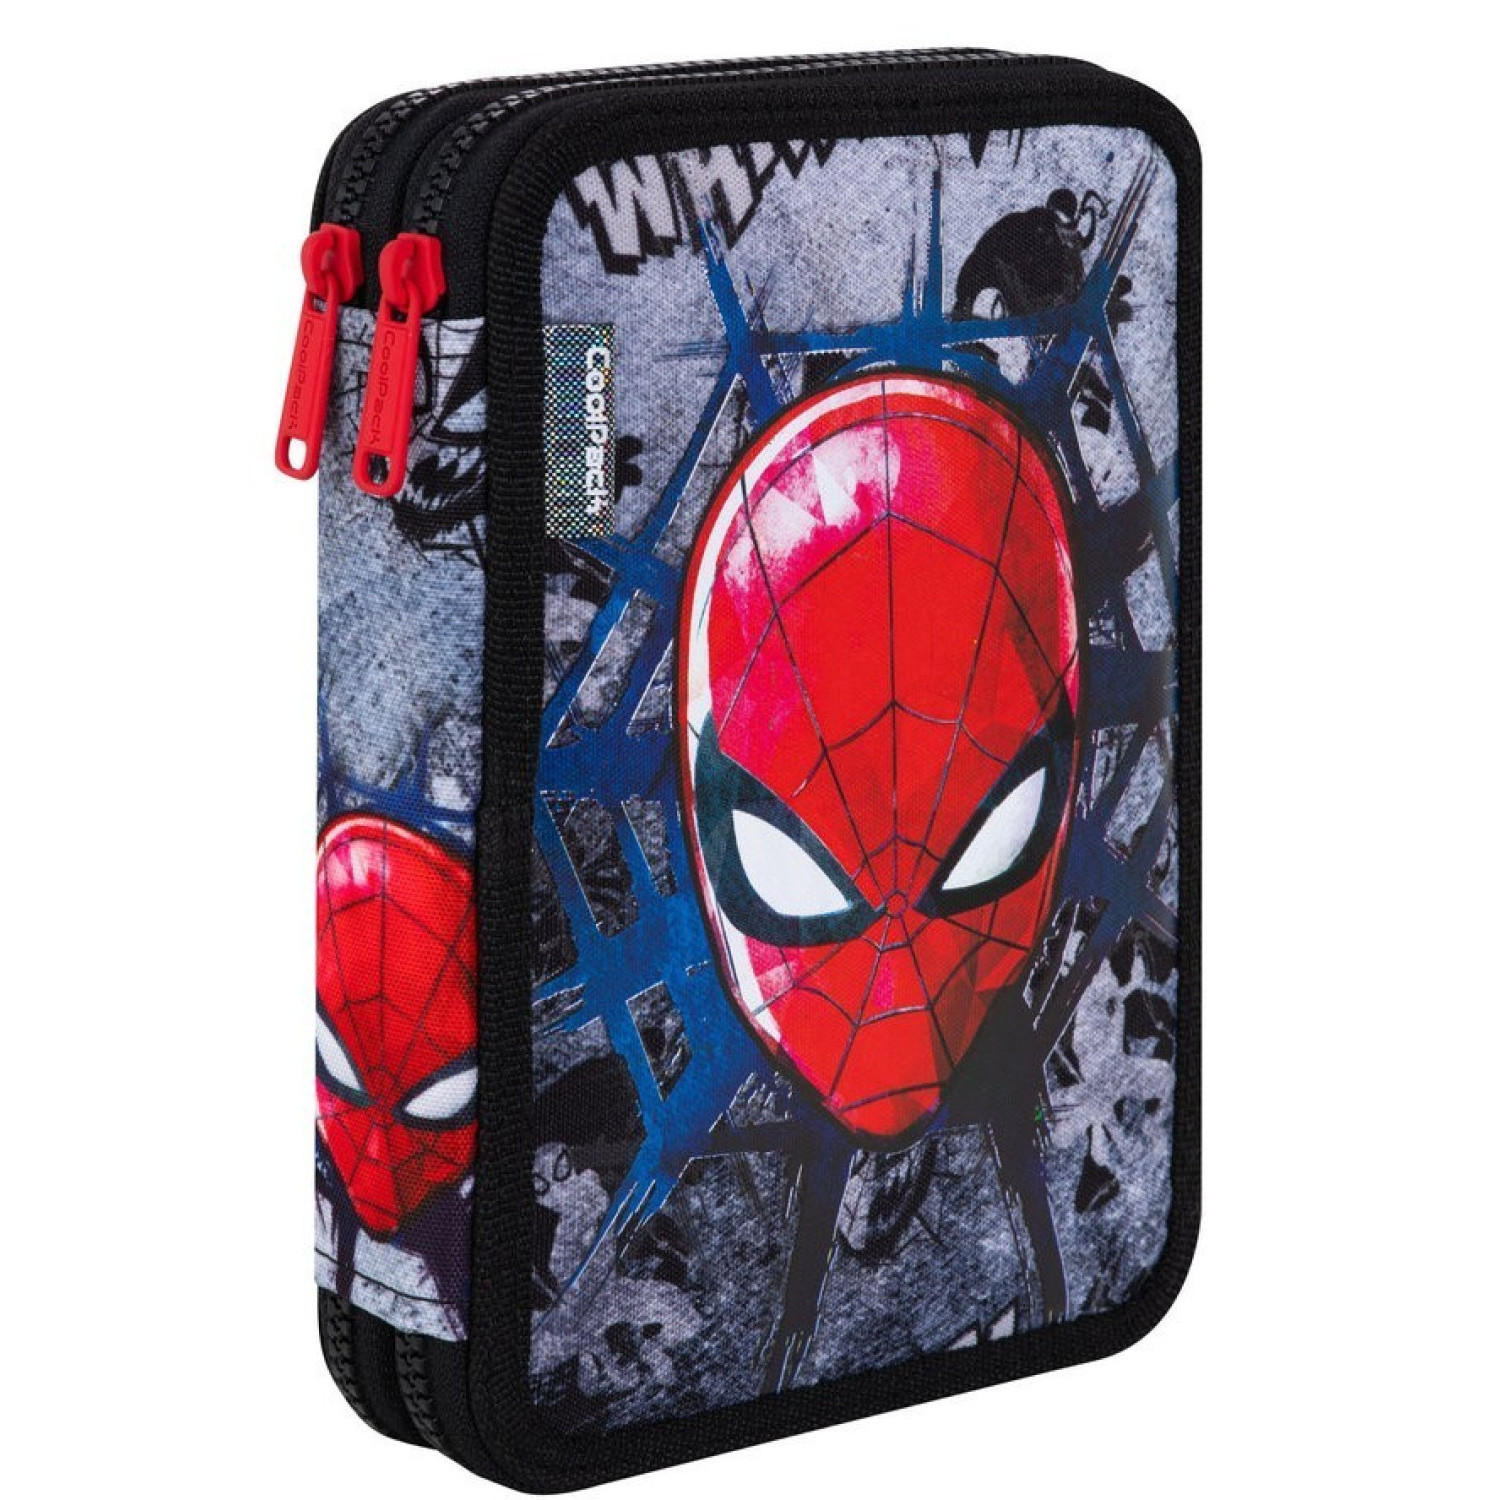 Несесер Spiderman 1 Jumper XL, пълен, с два ципа